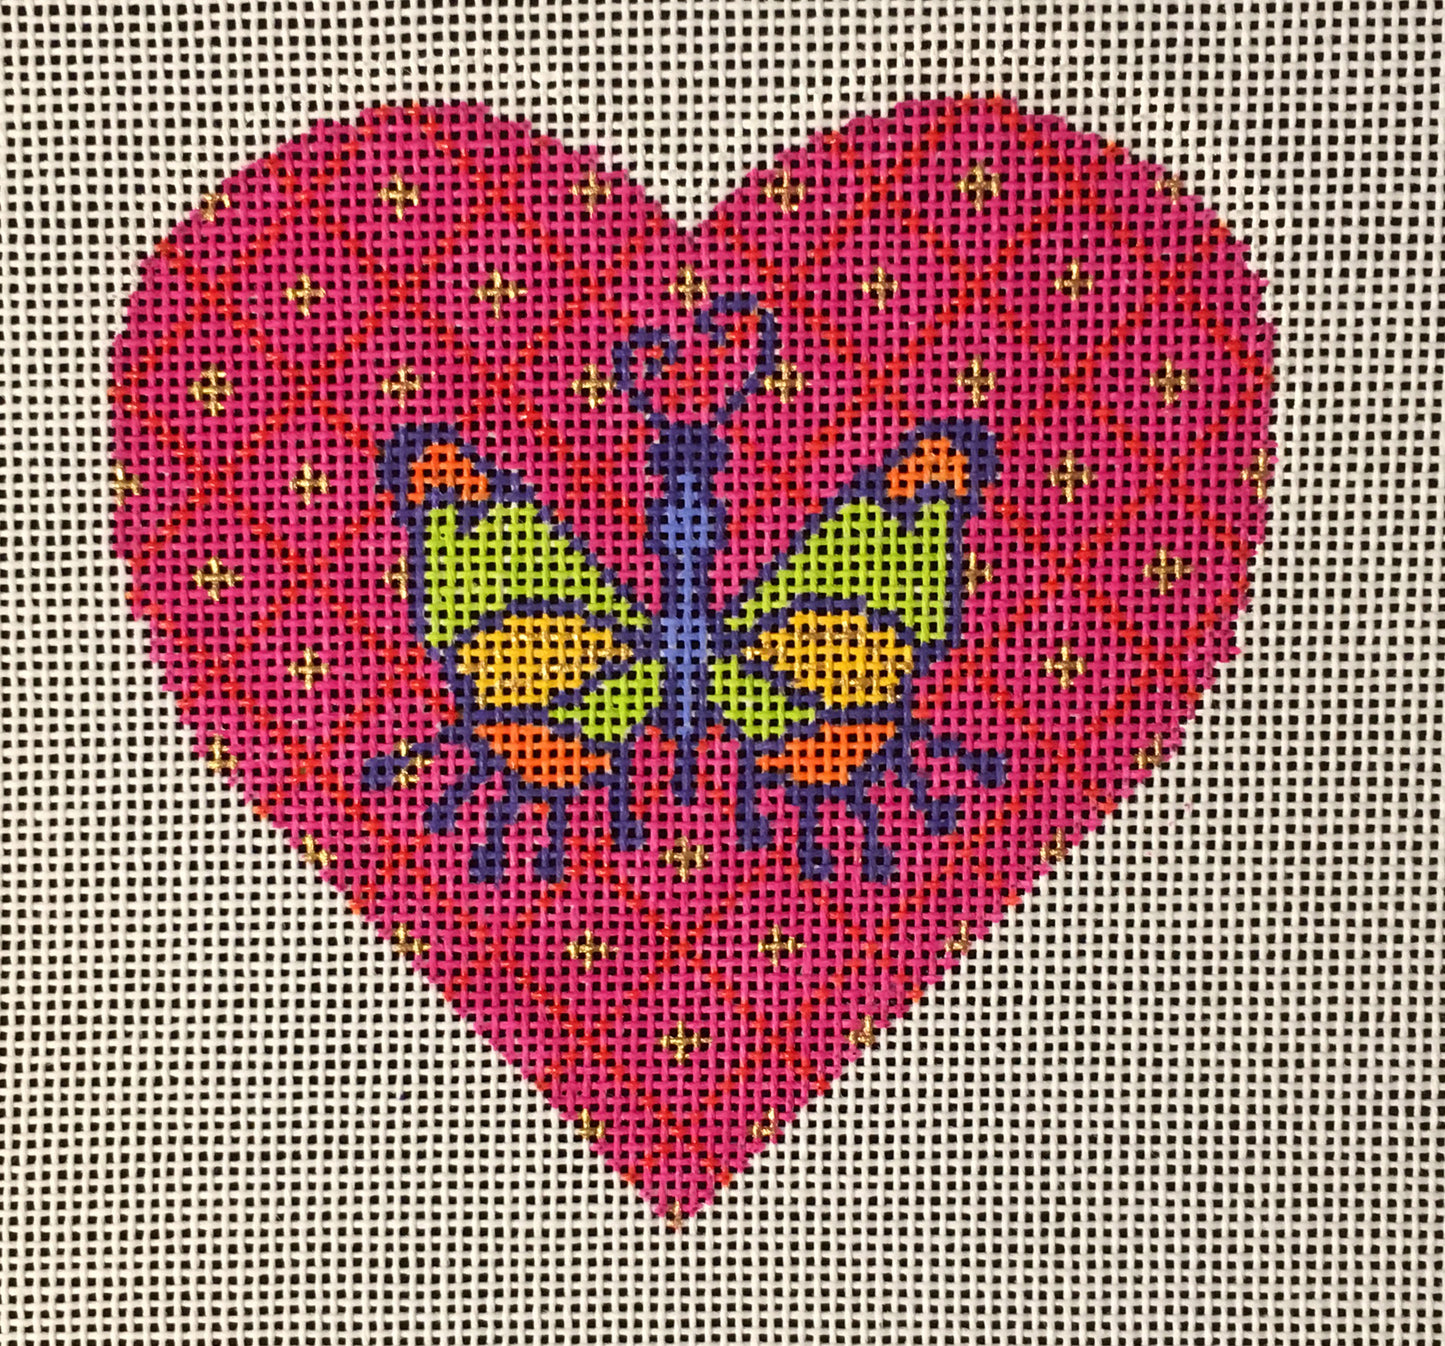 H-20 Butterfly Heart